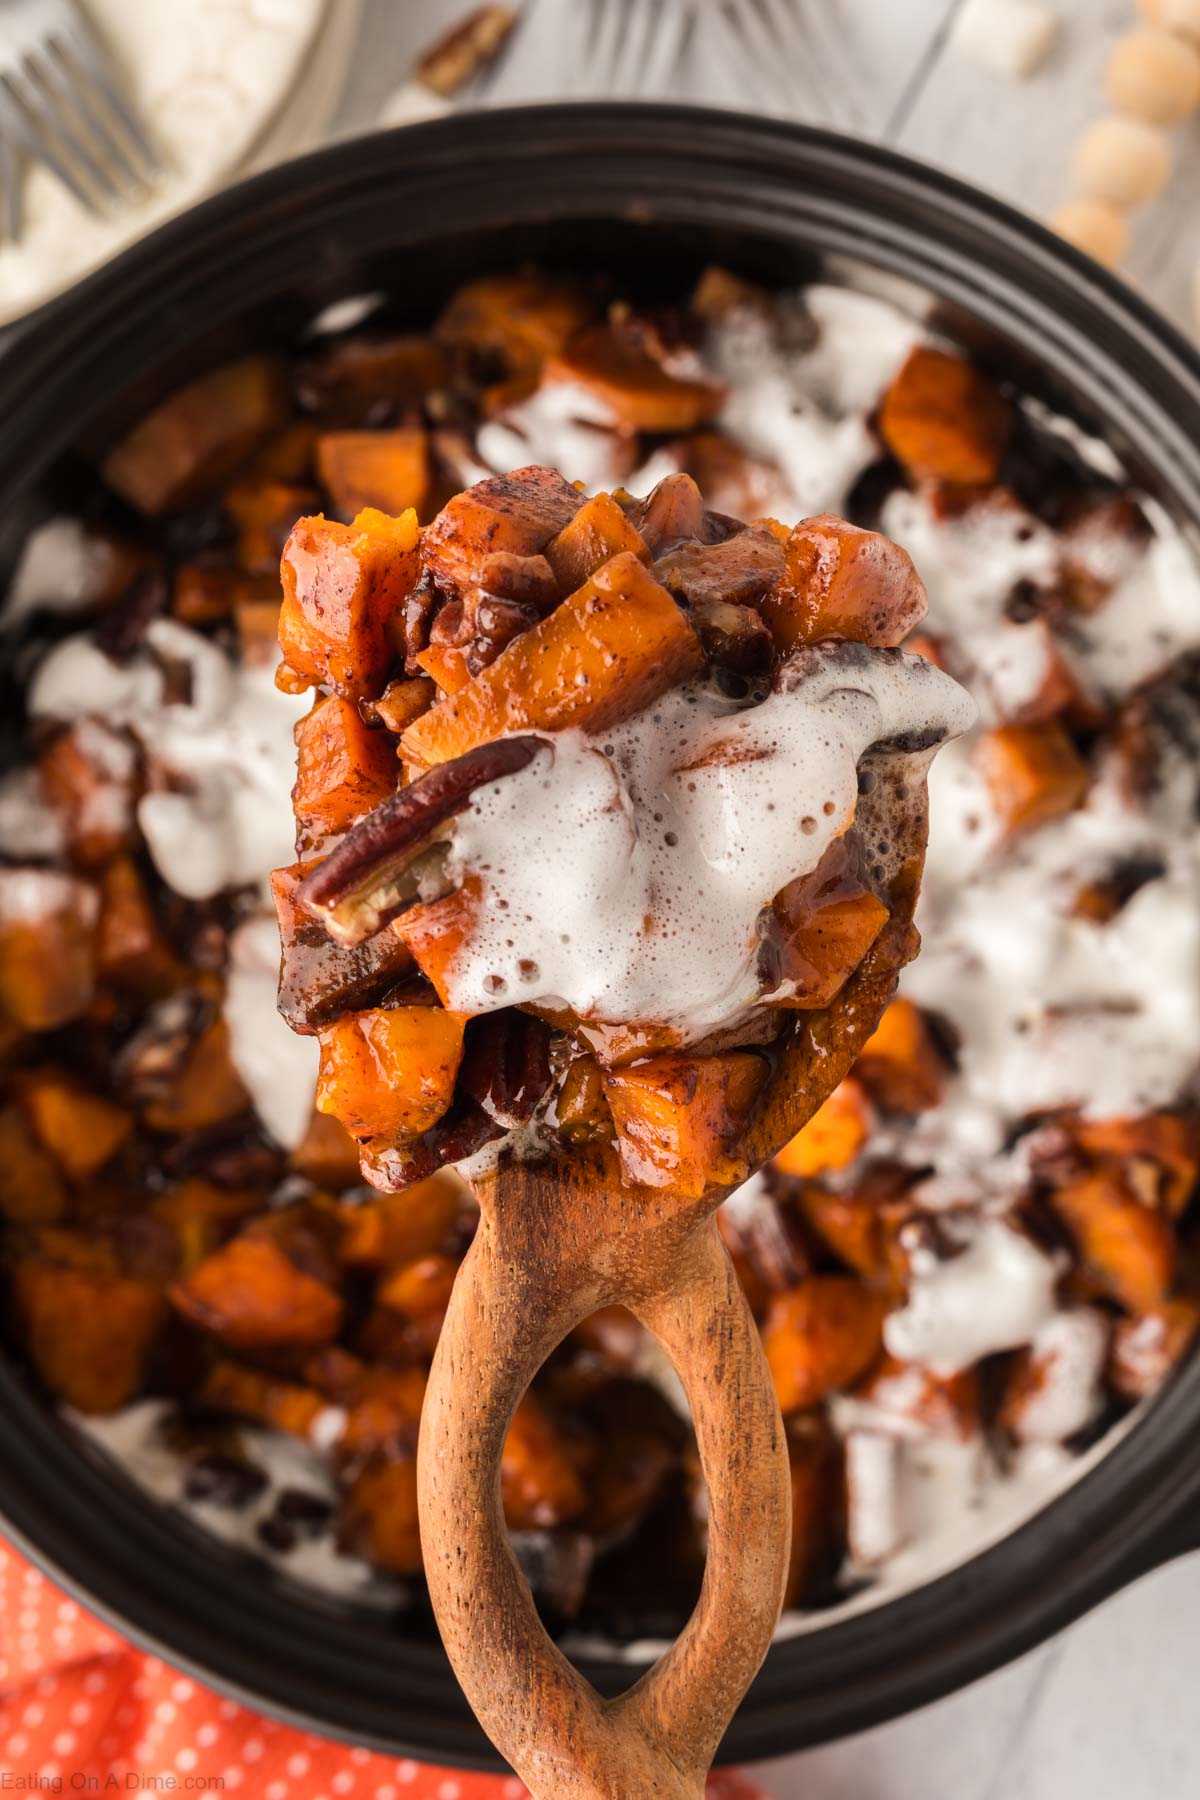 Crock Pot Sweet Potato Casserole Recipe